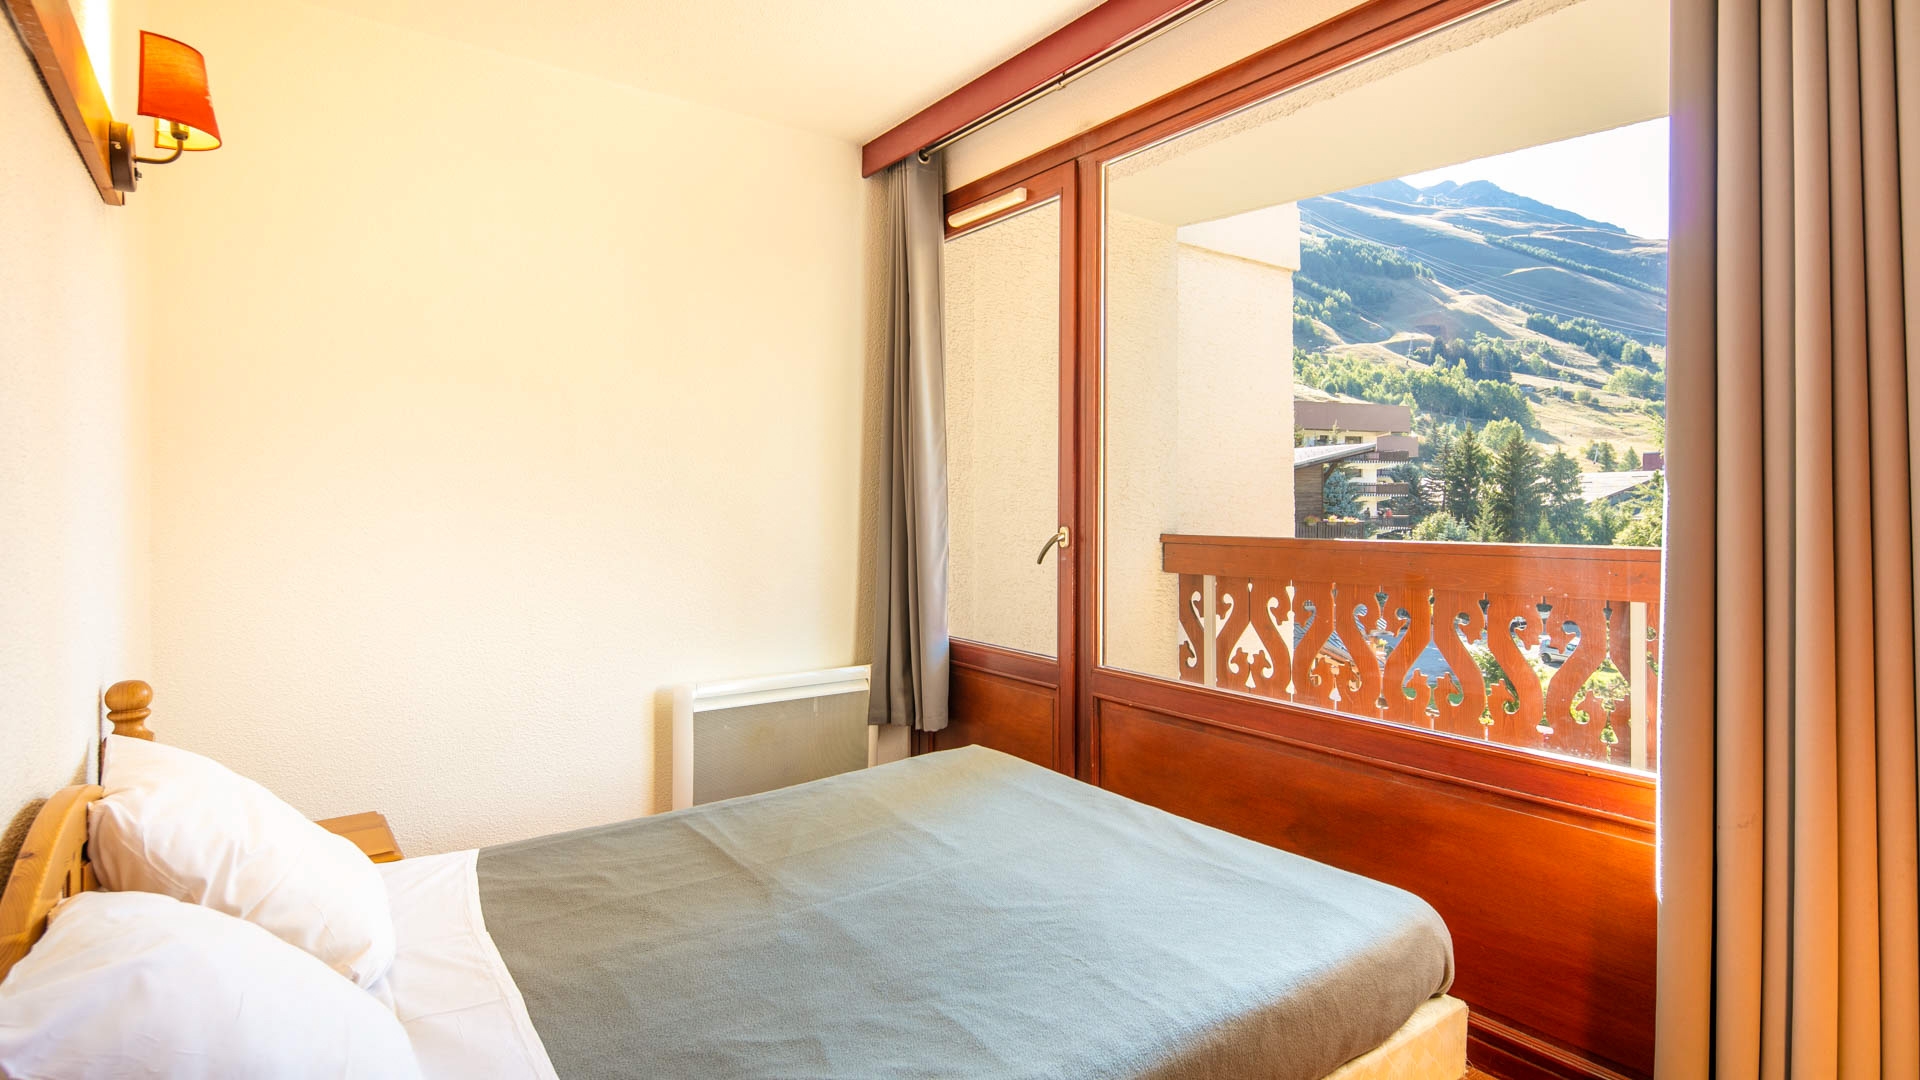 L'Edelweiss in Les 2 Alpes - Appartement für 6 Personen: Schlafbereich (Beispiel)